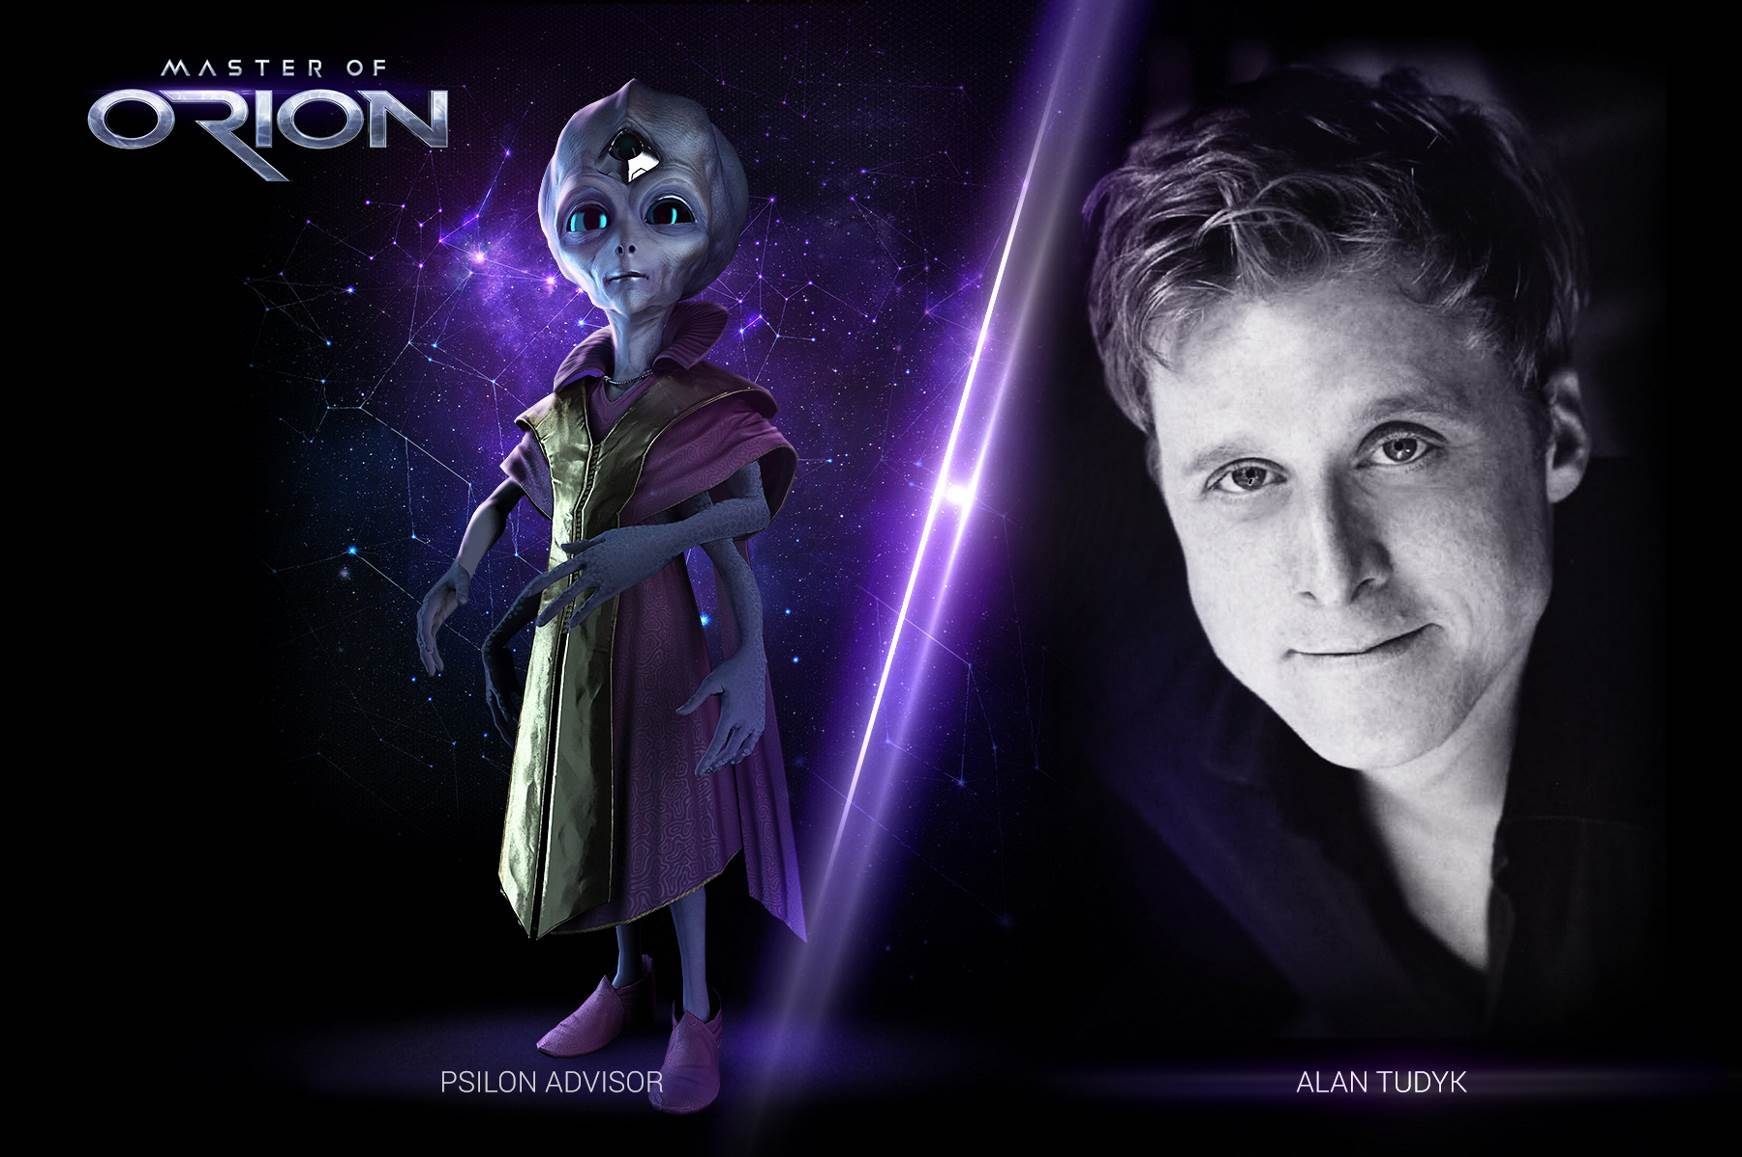 Alan Tudyk jest znany z grania w produkcjach SF. - Master of Orion pojawi się we wczesnym dostępie 25 lutego wraz z głosami Luke Skywalkera i Nathana Drake’a - wiadomość - 2016-02-18